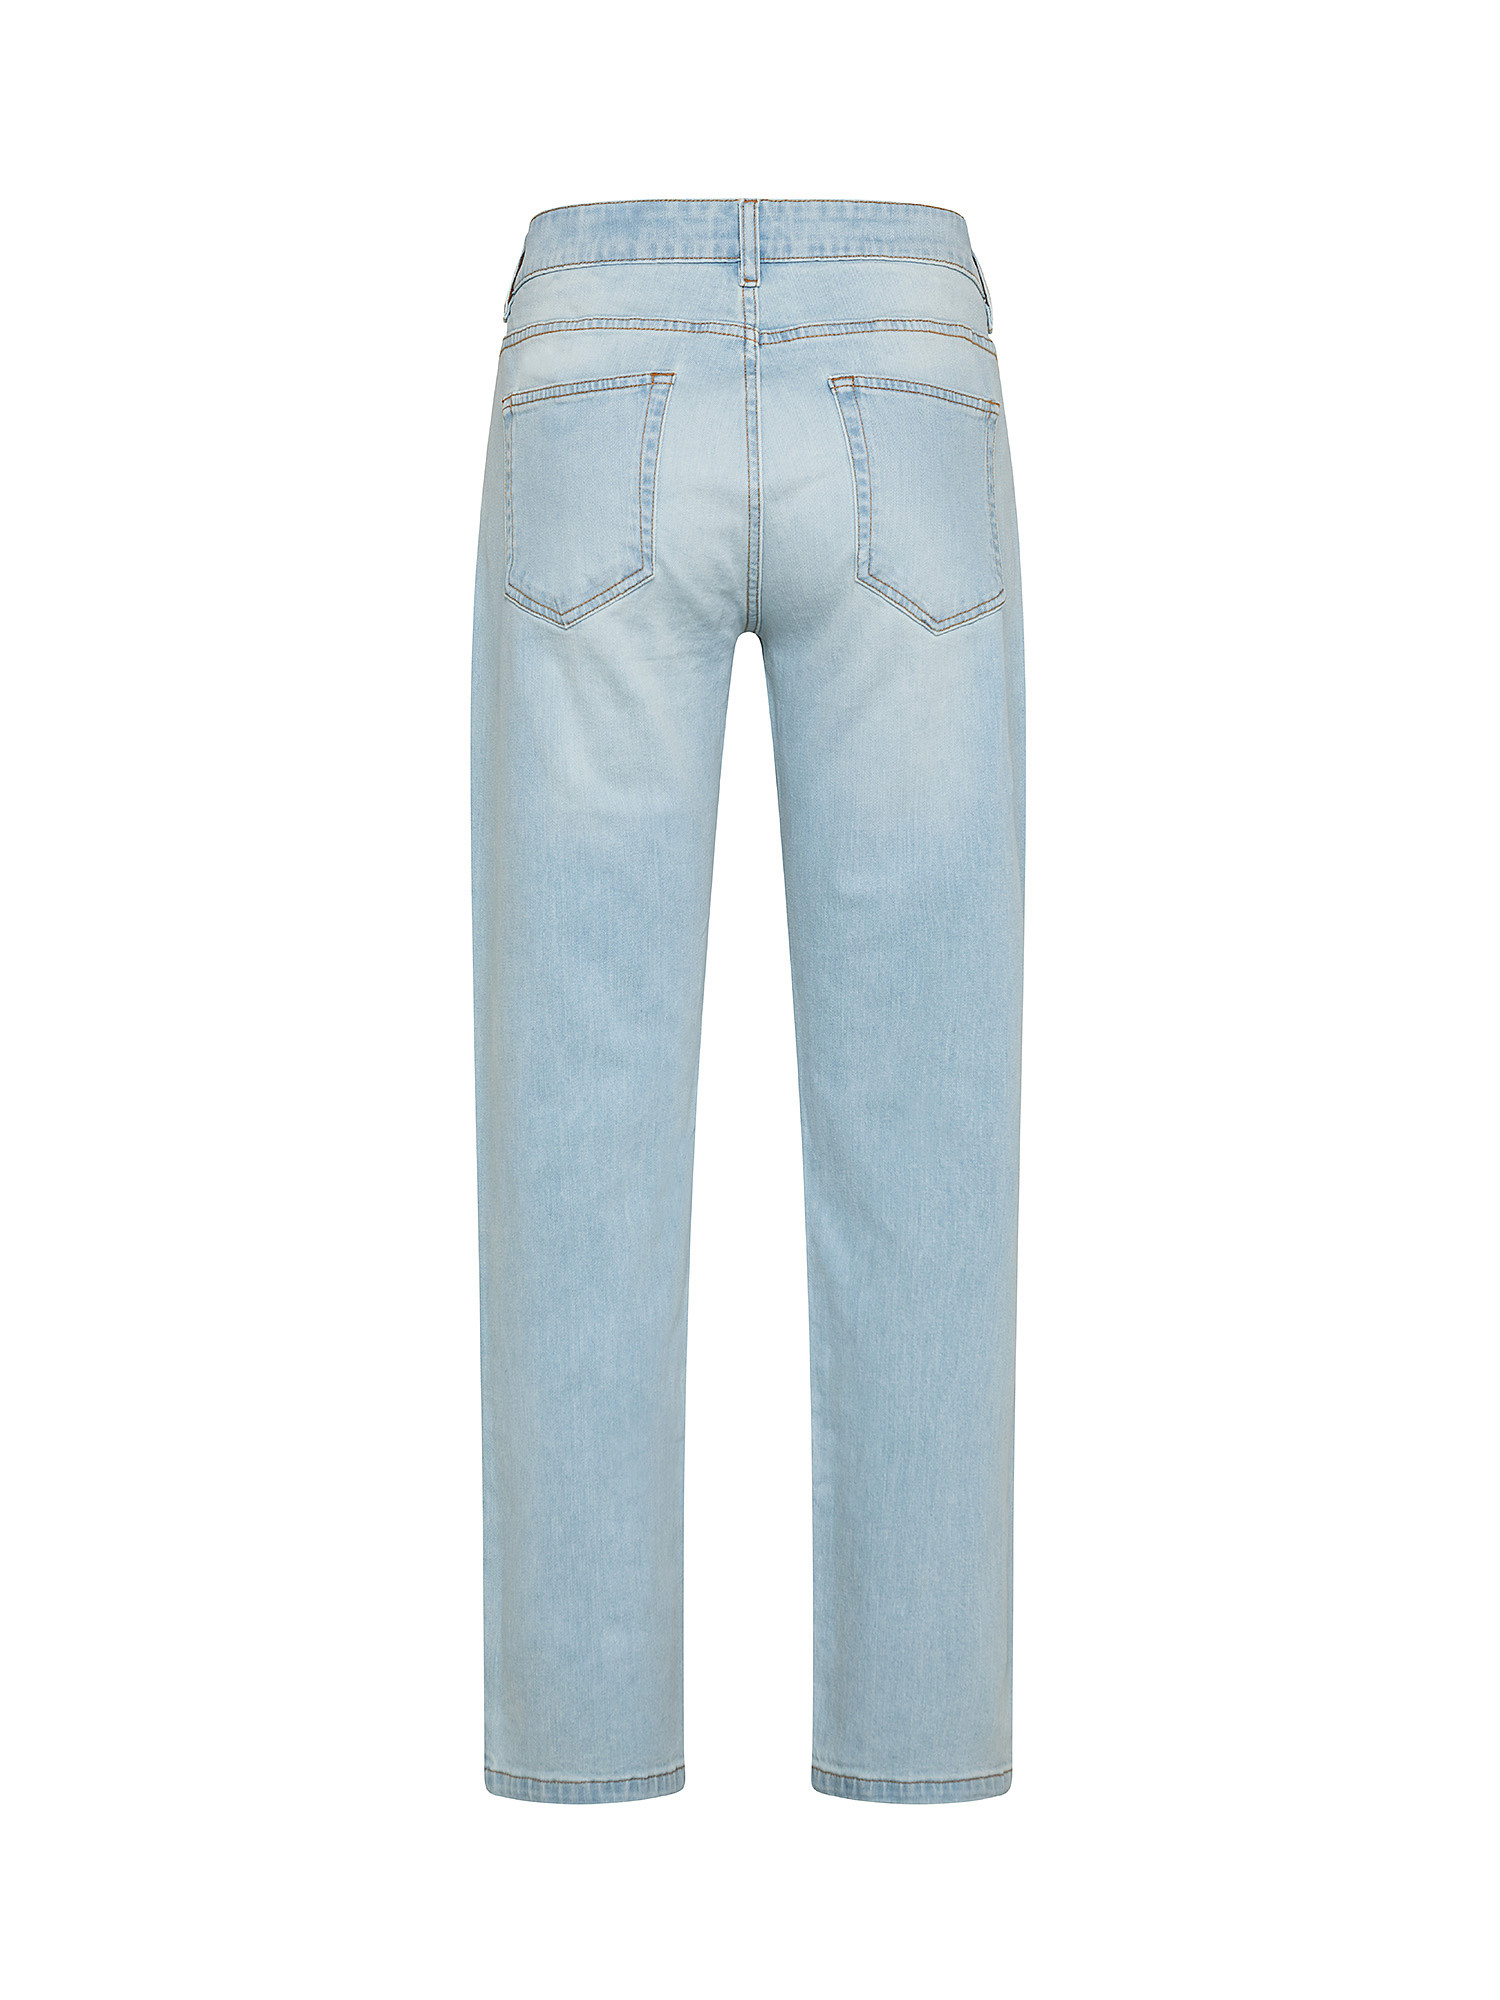 Five pocket jeans, Light Blue, large image number 1